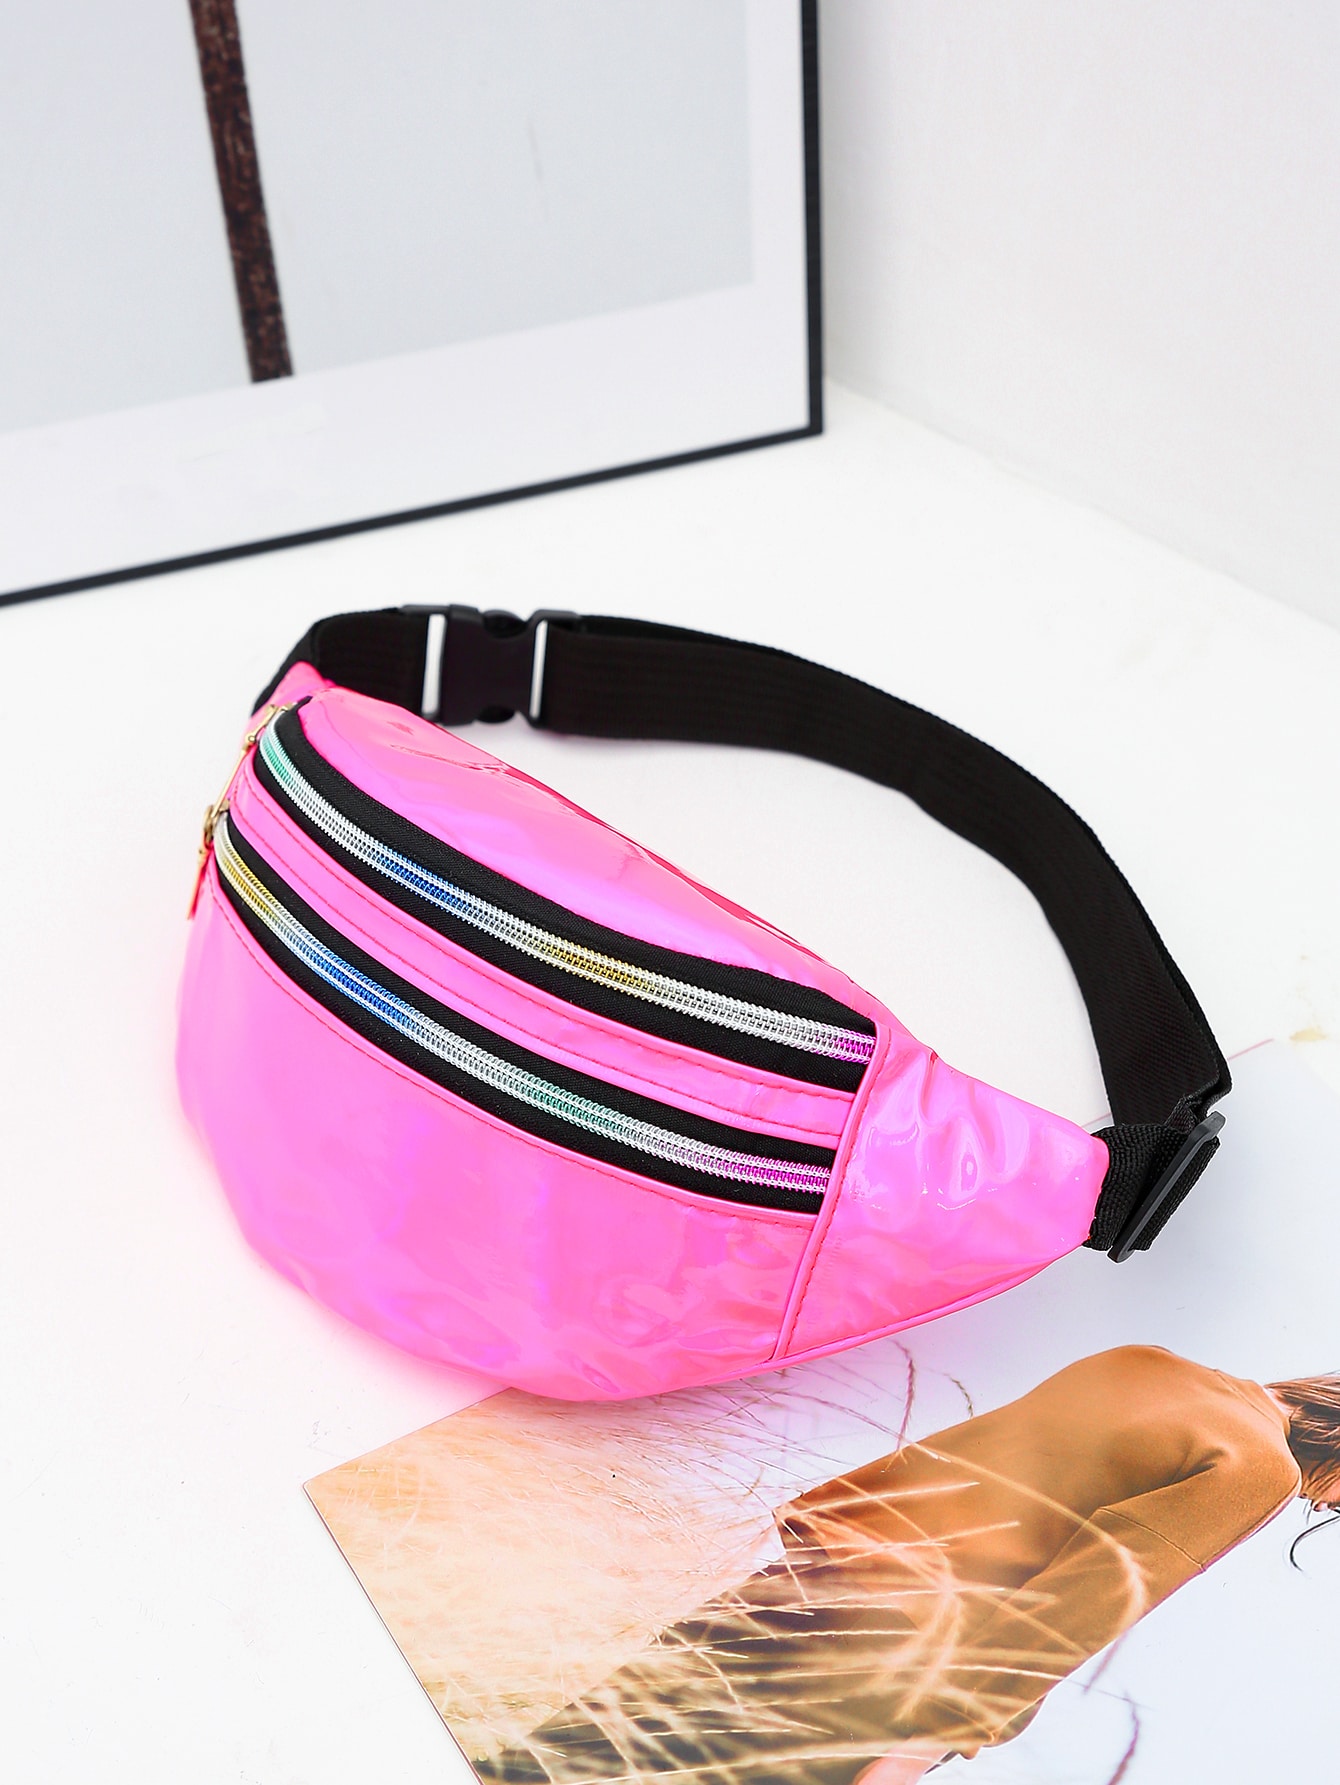 Голографическая поясная сумка Funky, розовый маленькая поясная сумка неоново розовая вечерняя сумка в стиле фанк с рюшами для женщин абрикос